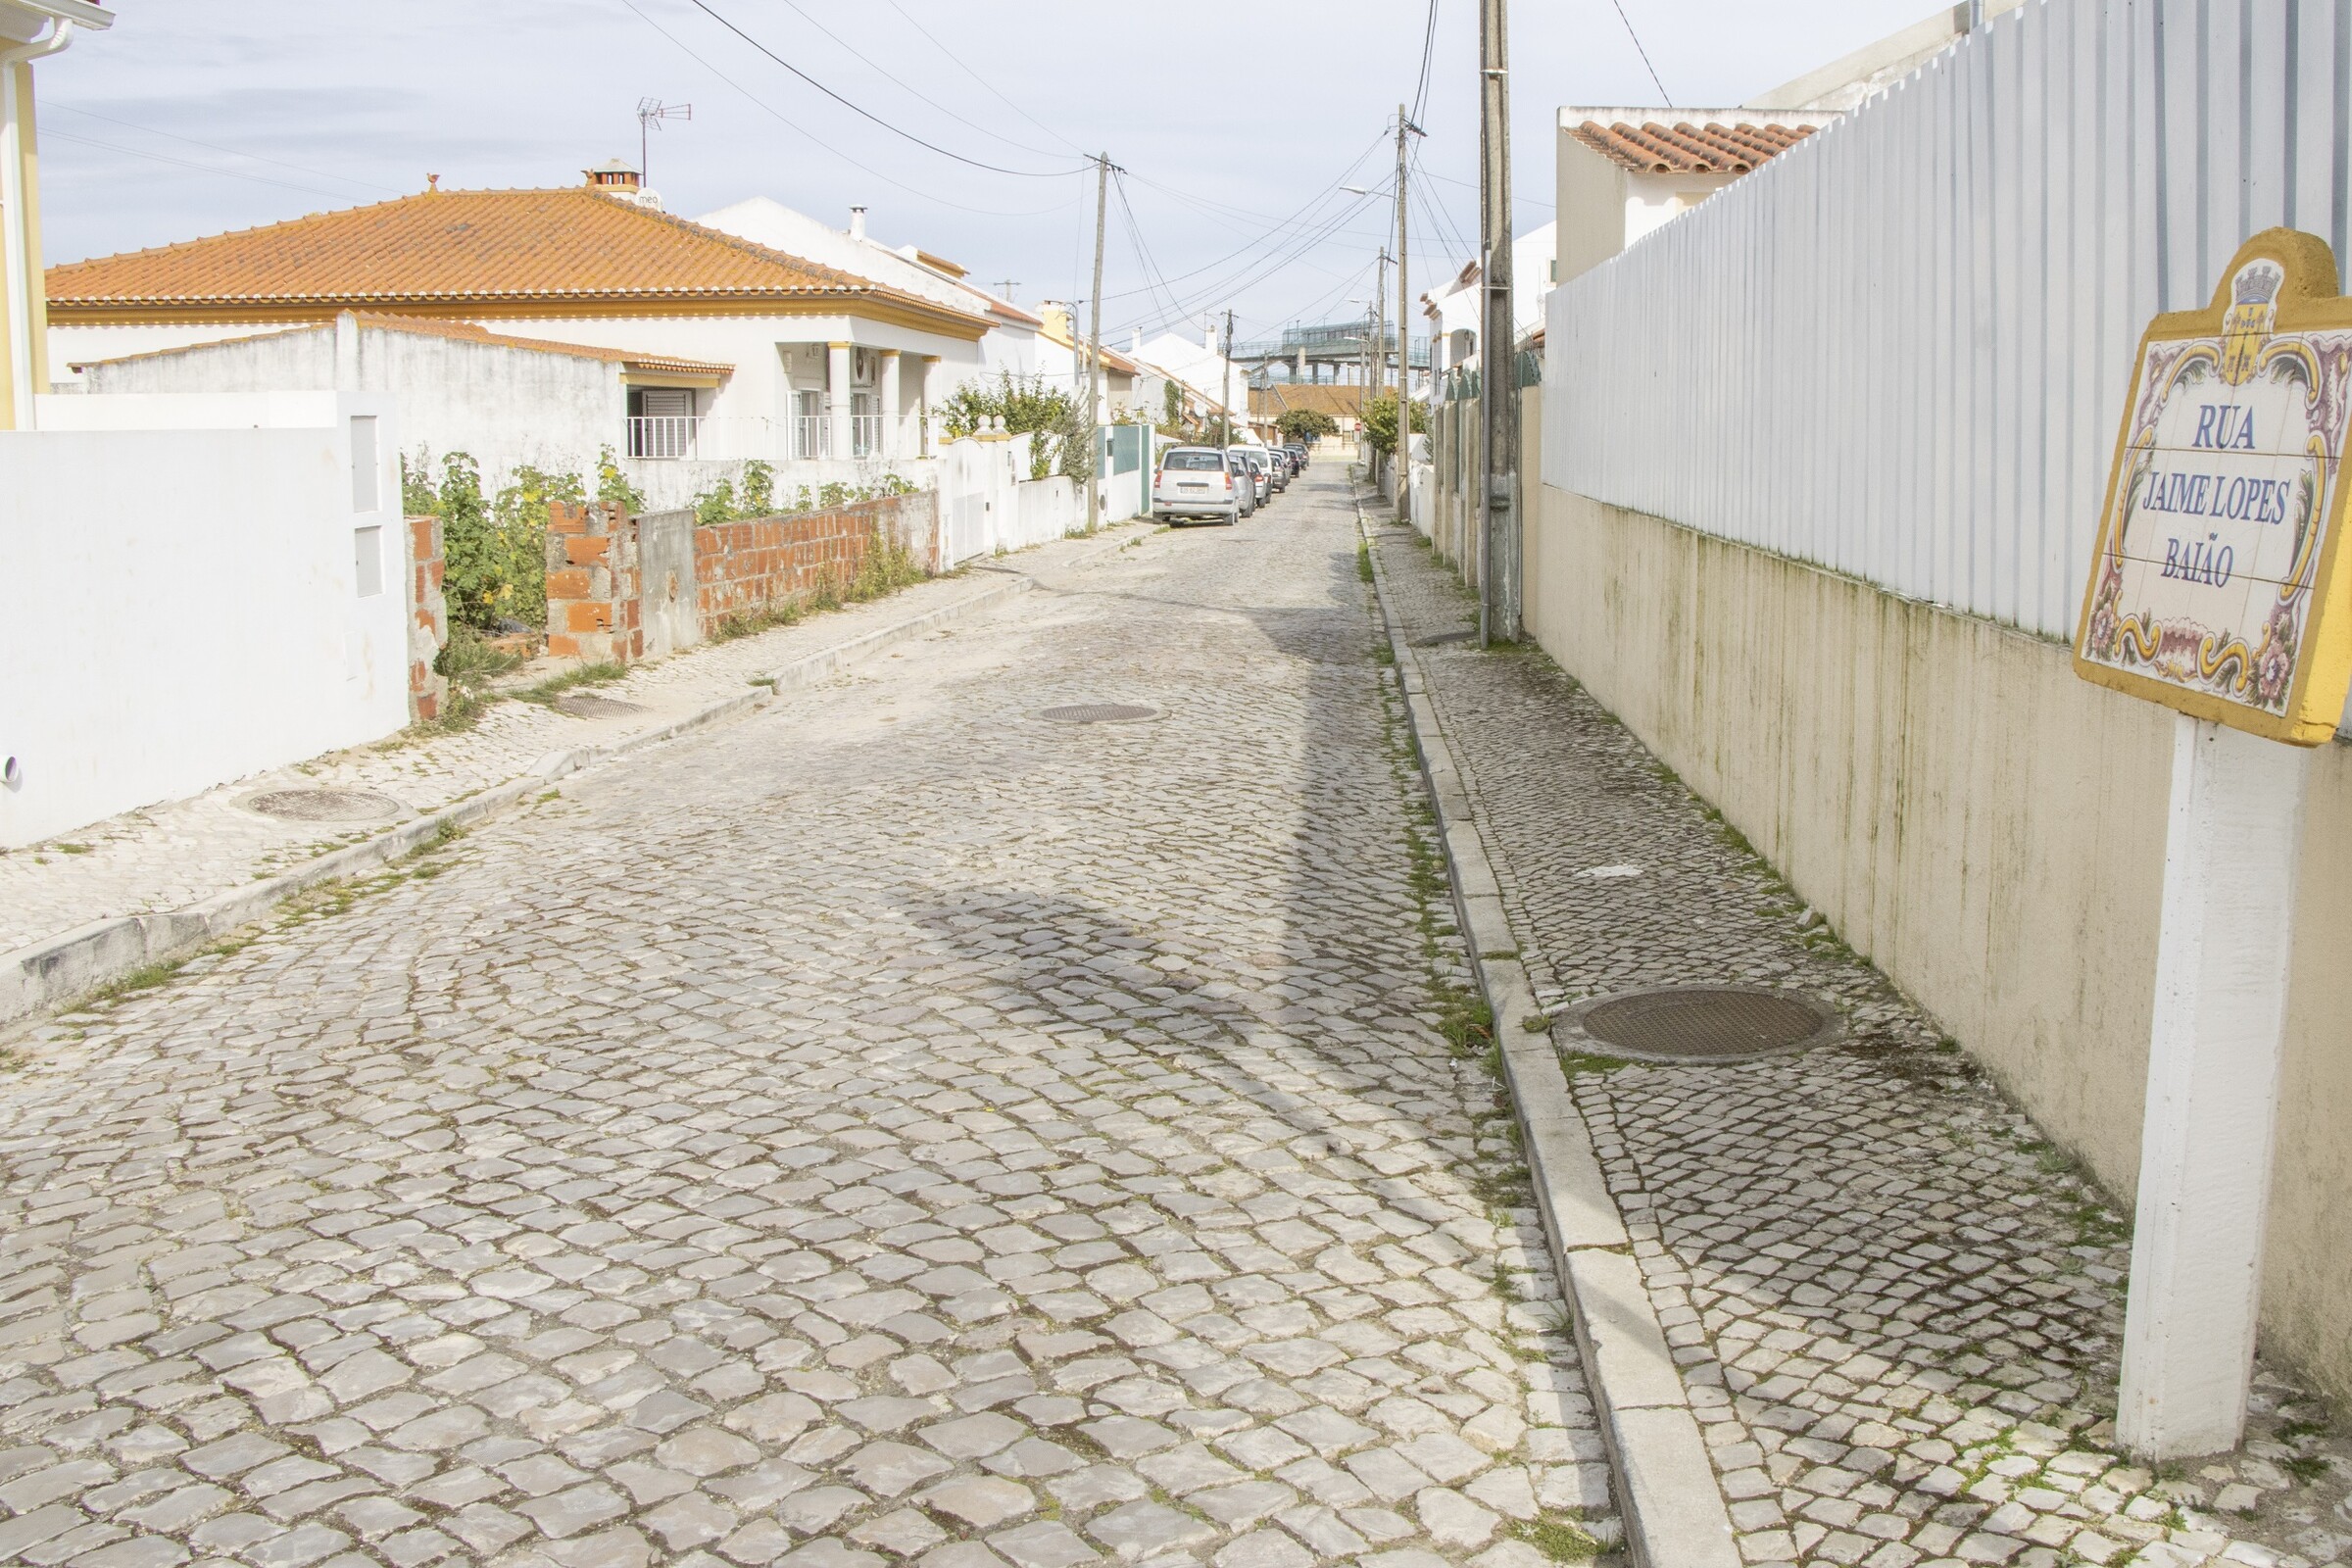 Repavimentação da Rua Jaime Lopes Baião/Venda do Alcaide adjudicada